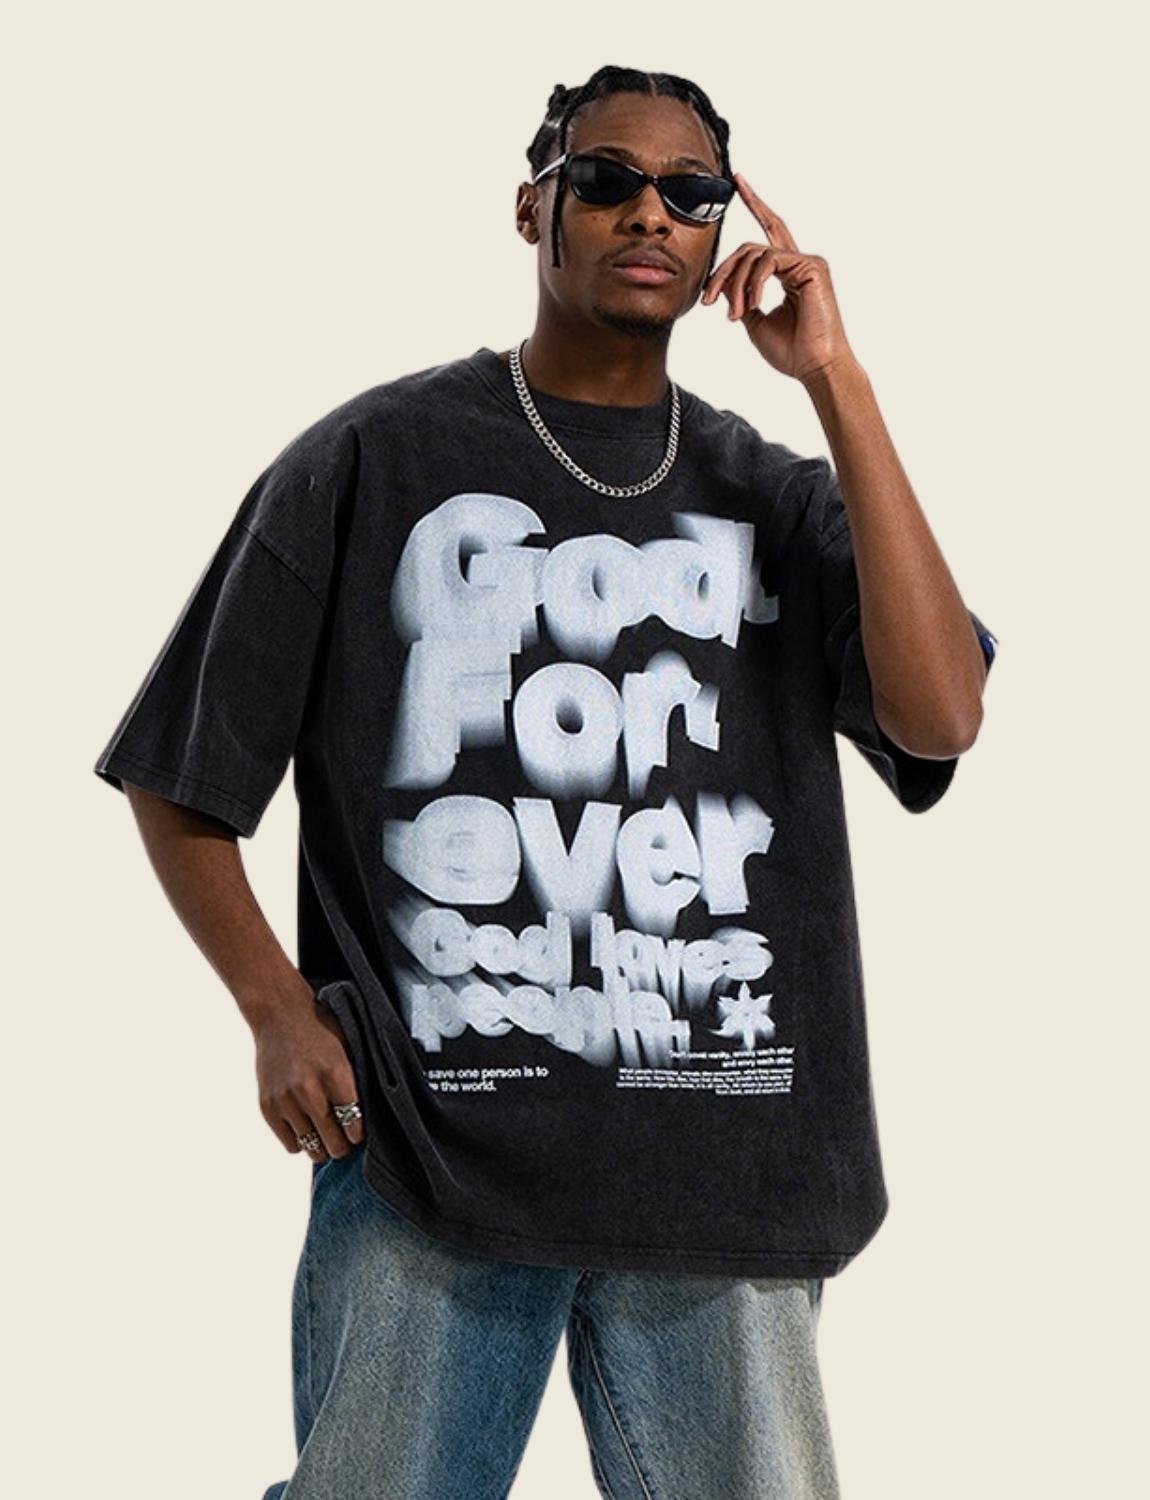 FSW® "God" T-Shirt